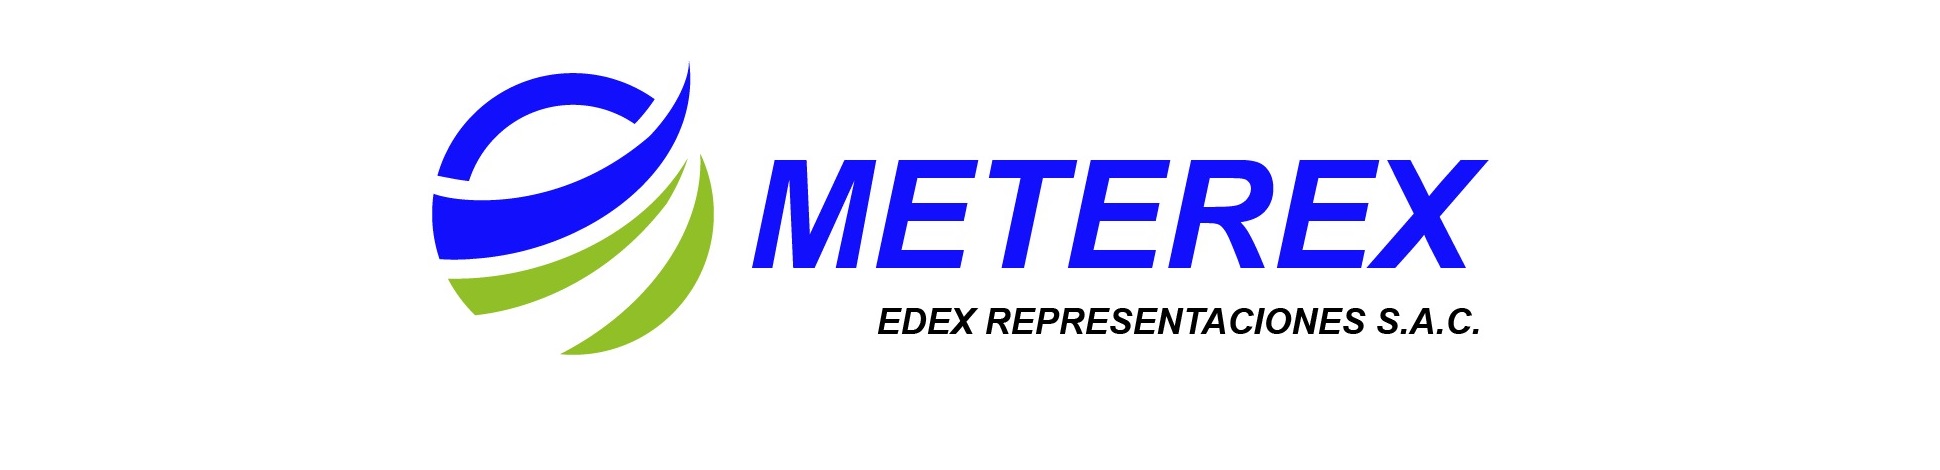 Banner Meterex 1940x470.jpg